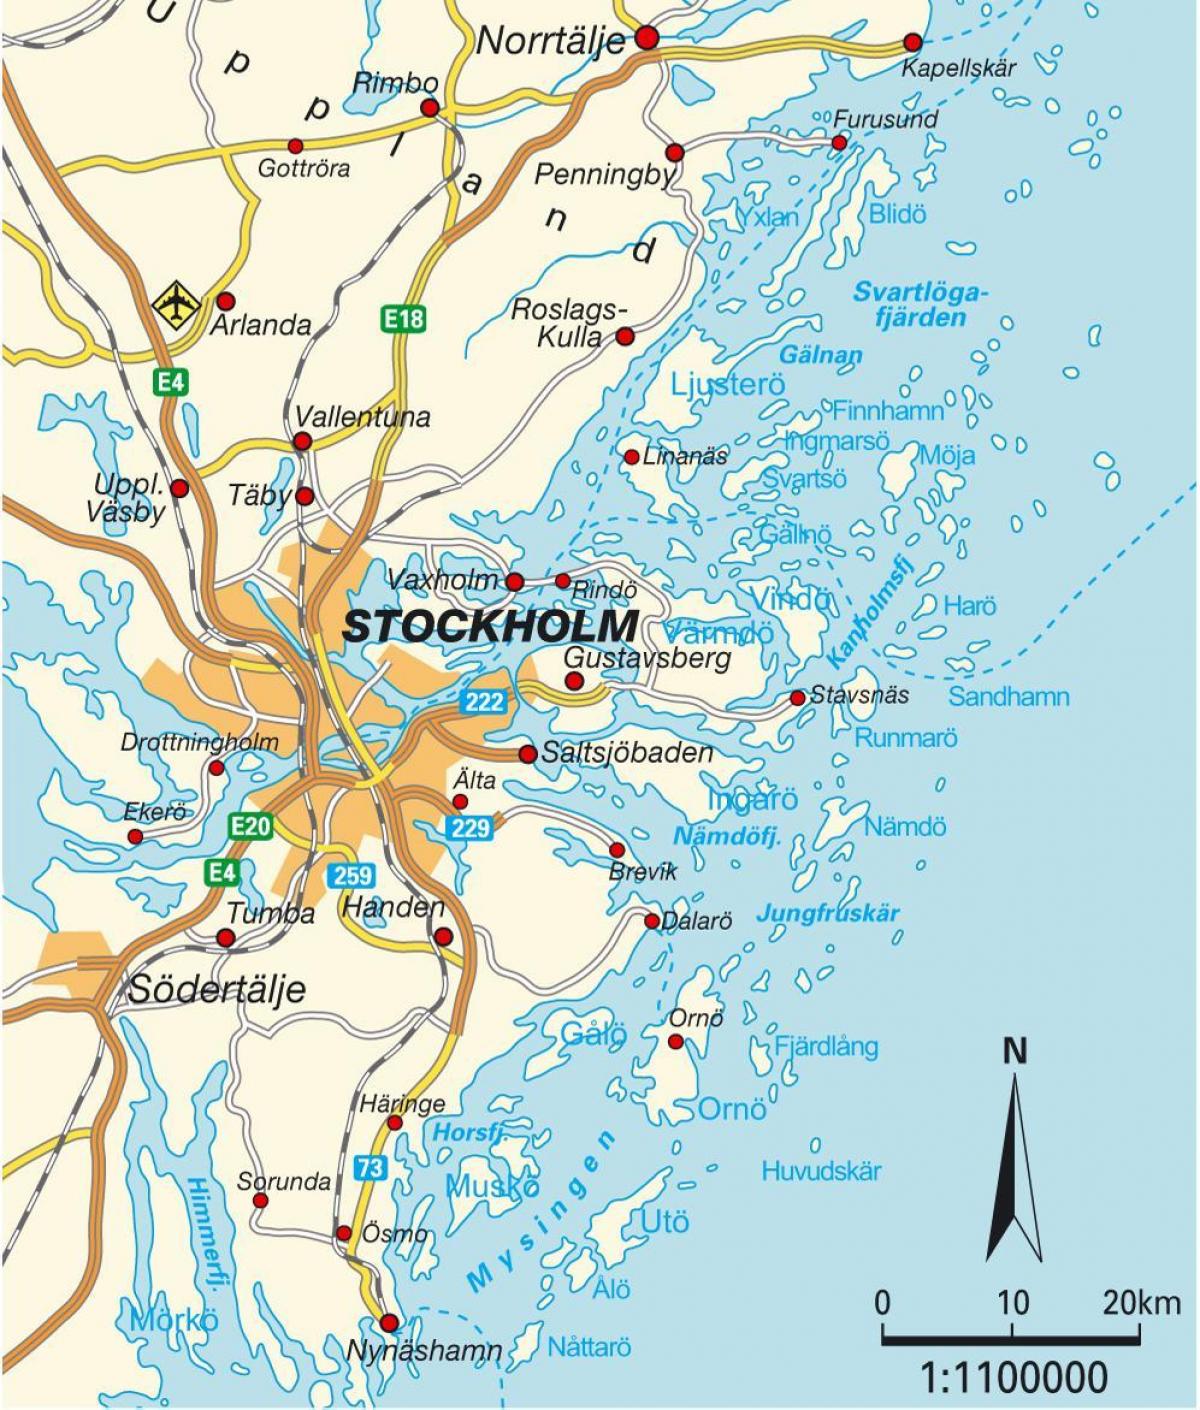 سٹاک ہوم سویڈن کا نقشہ شہر